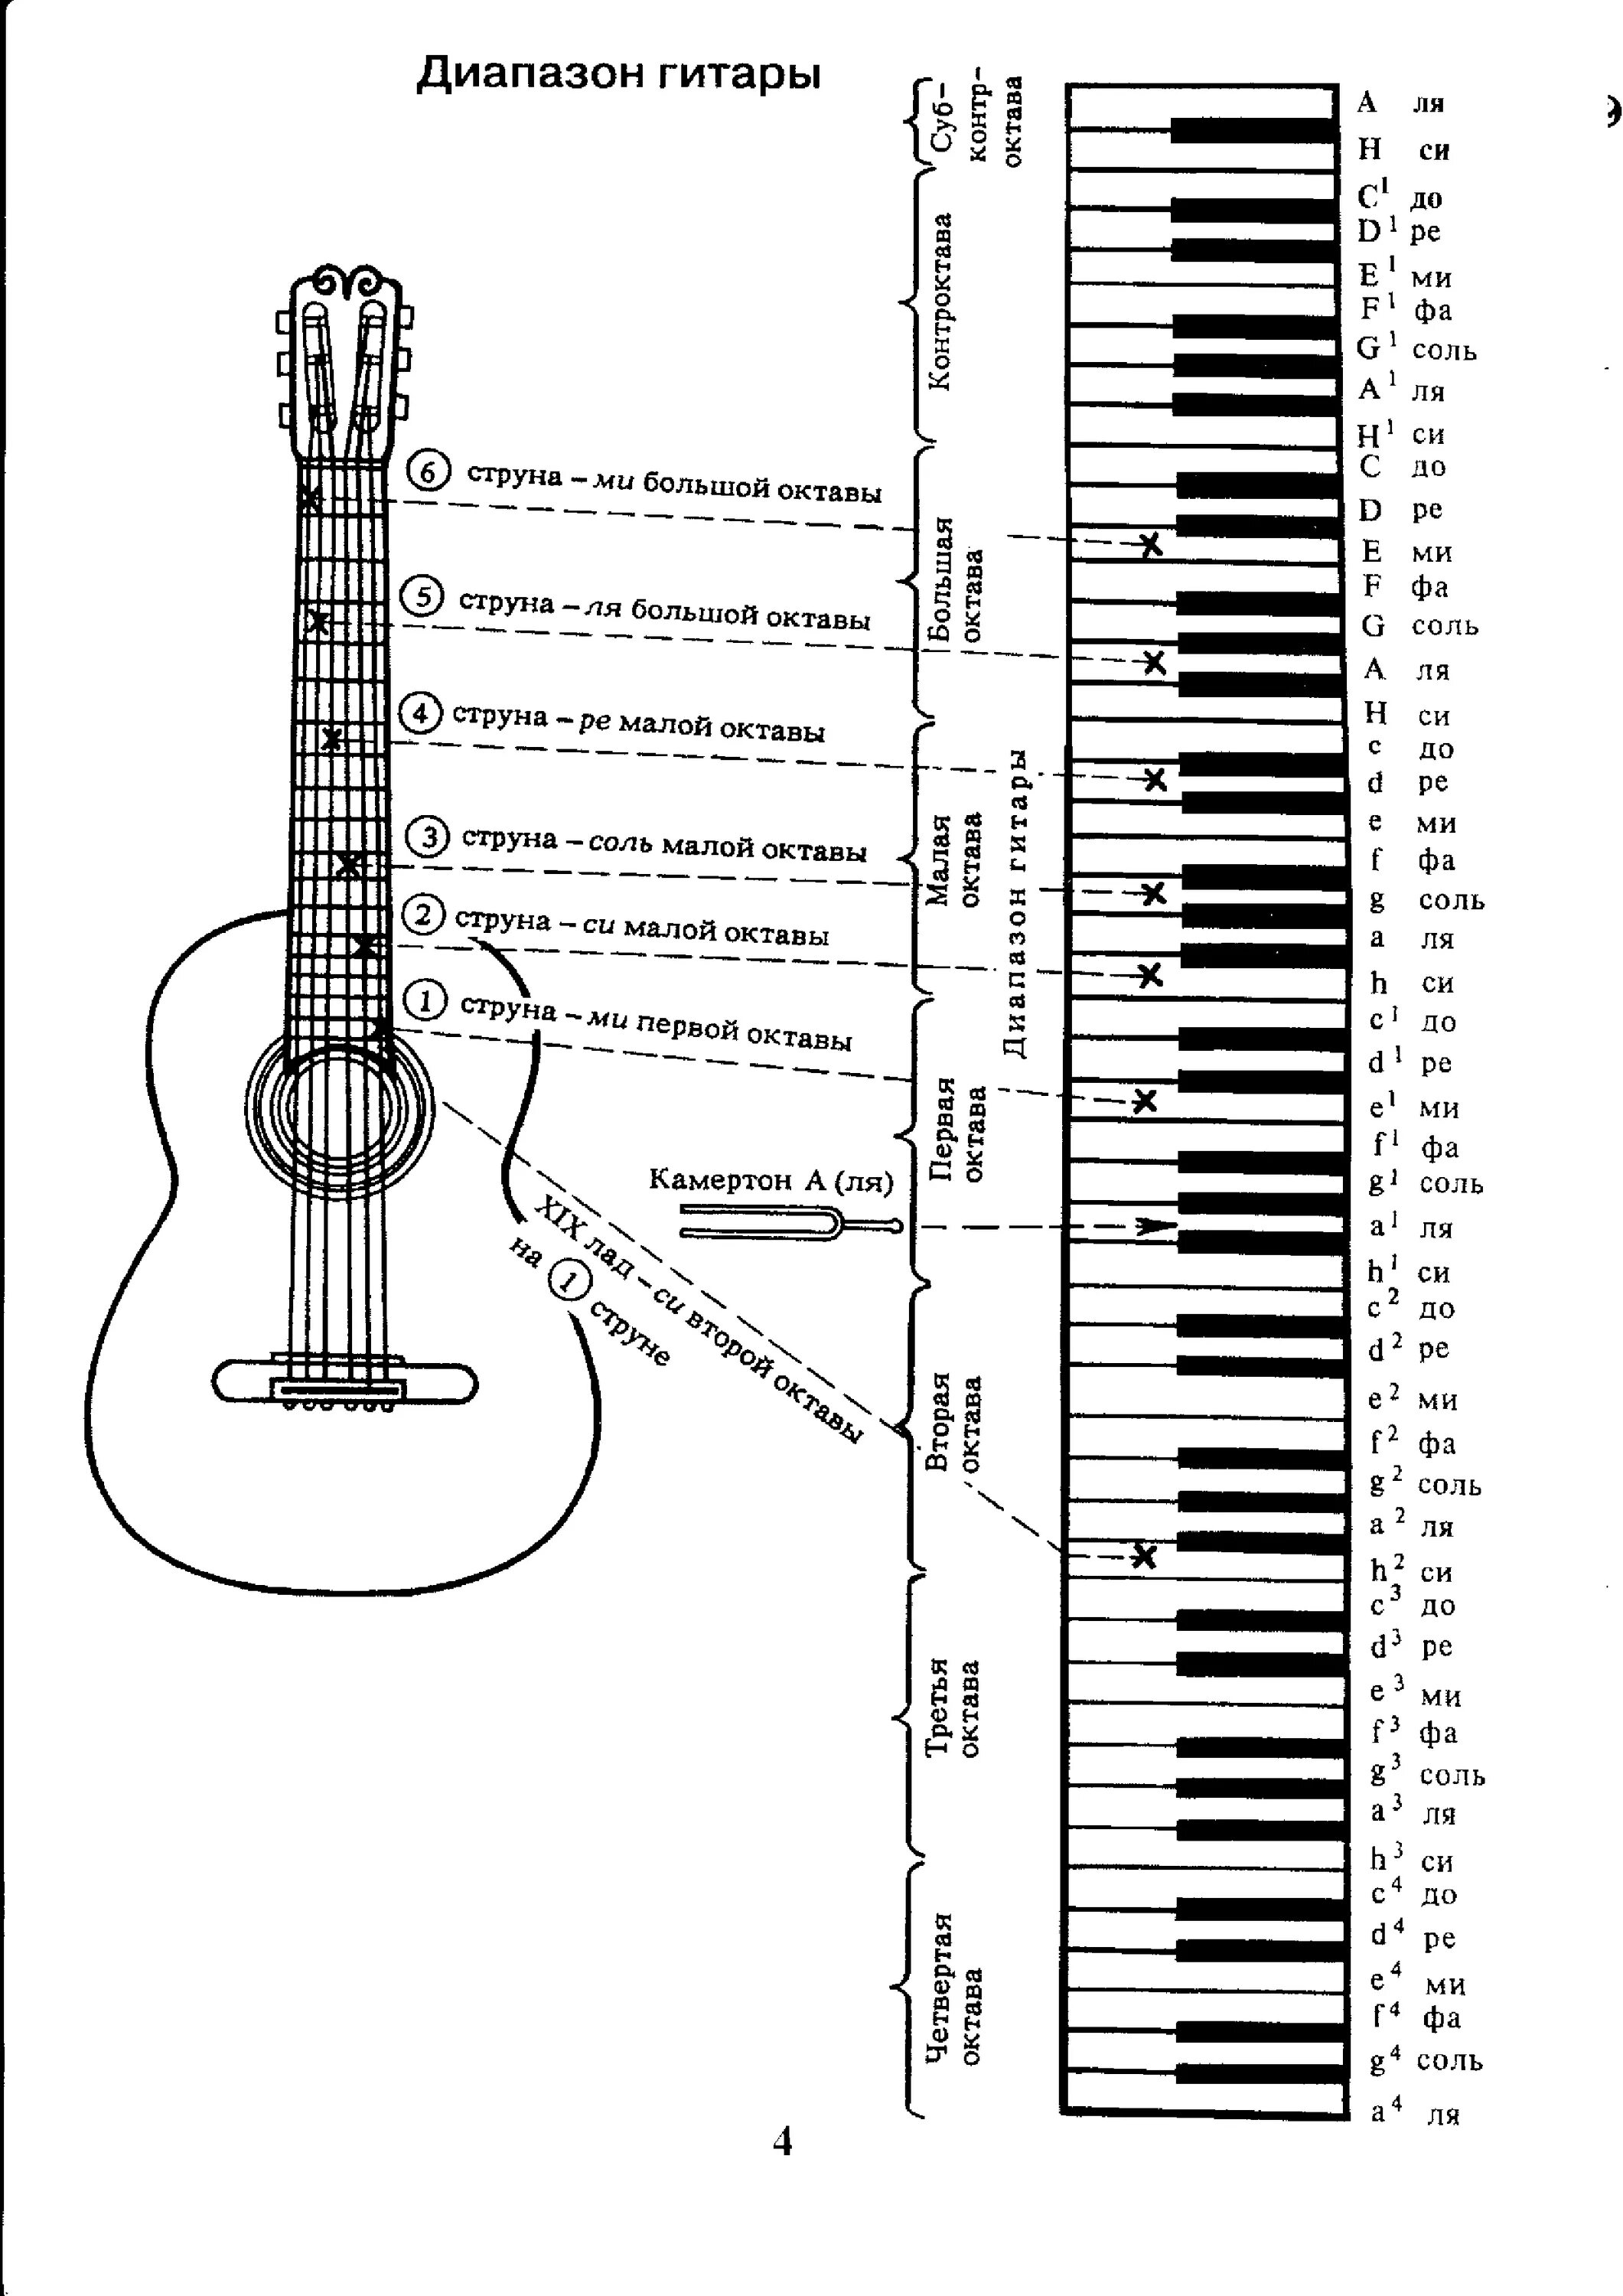 Октавы на грифе. Аппликатура аккордов для гитары 6 струн для начинающих. Ноты на гитарном грифе 6 струнной. Лады на 6 струнной гитаре для начинающих. Схема гитары классической 6 струнной.